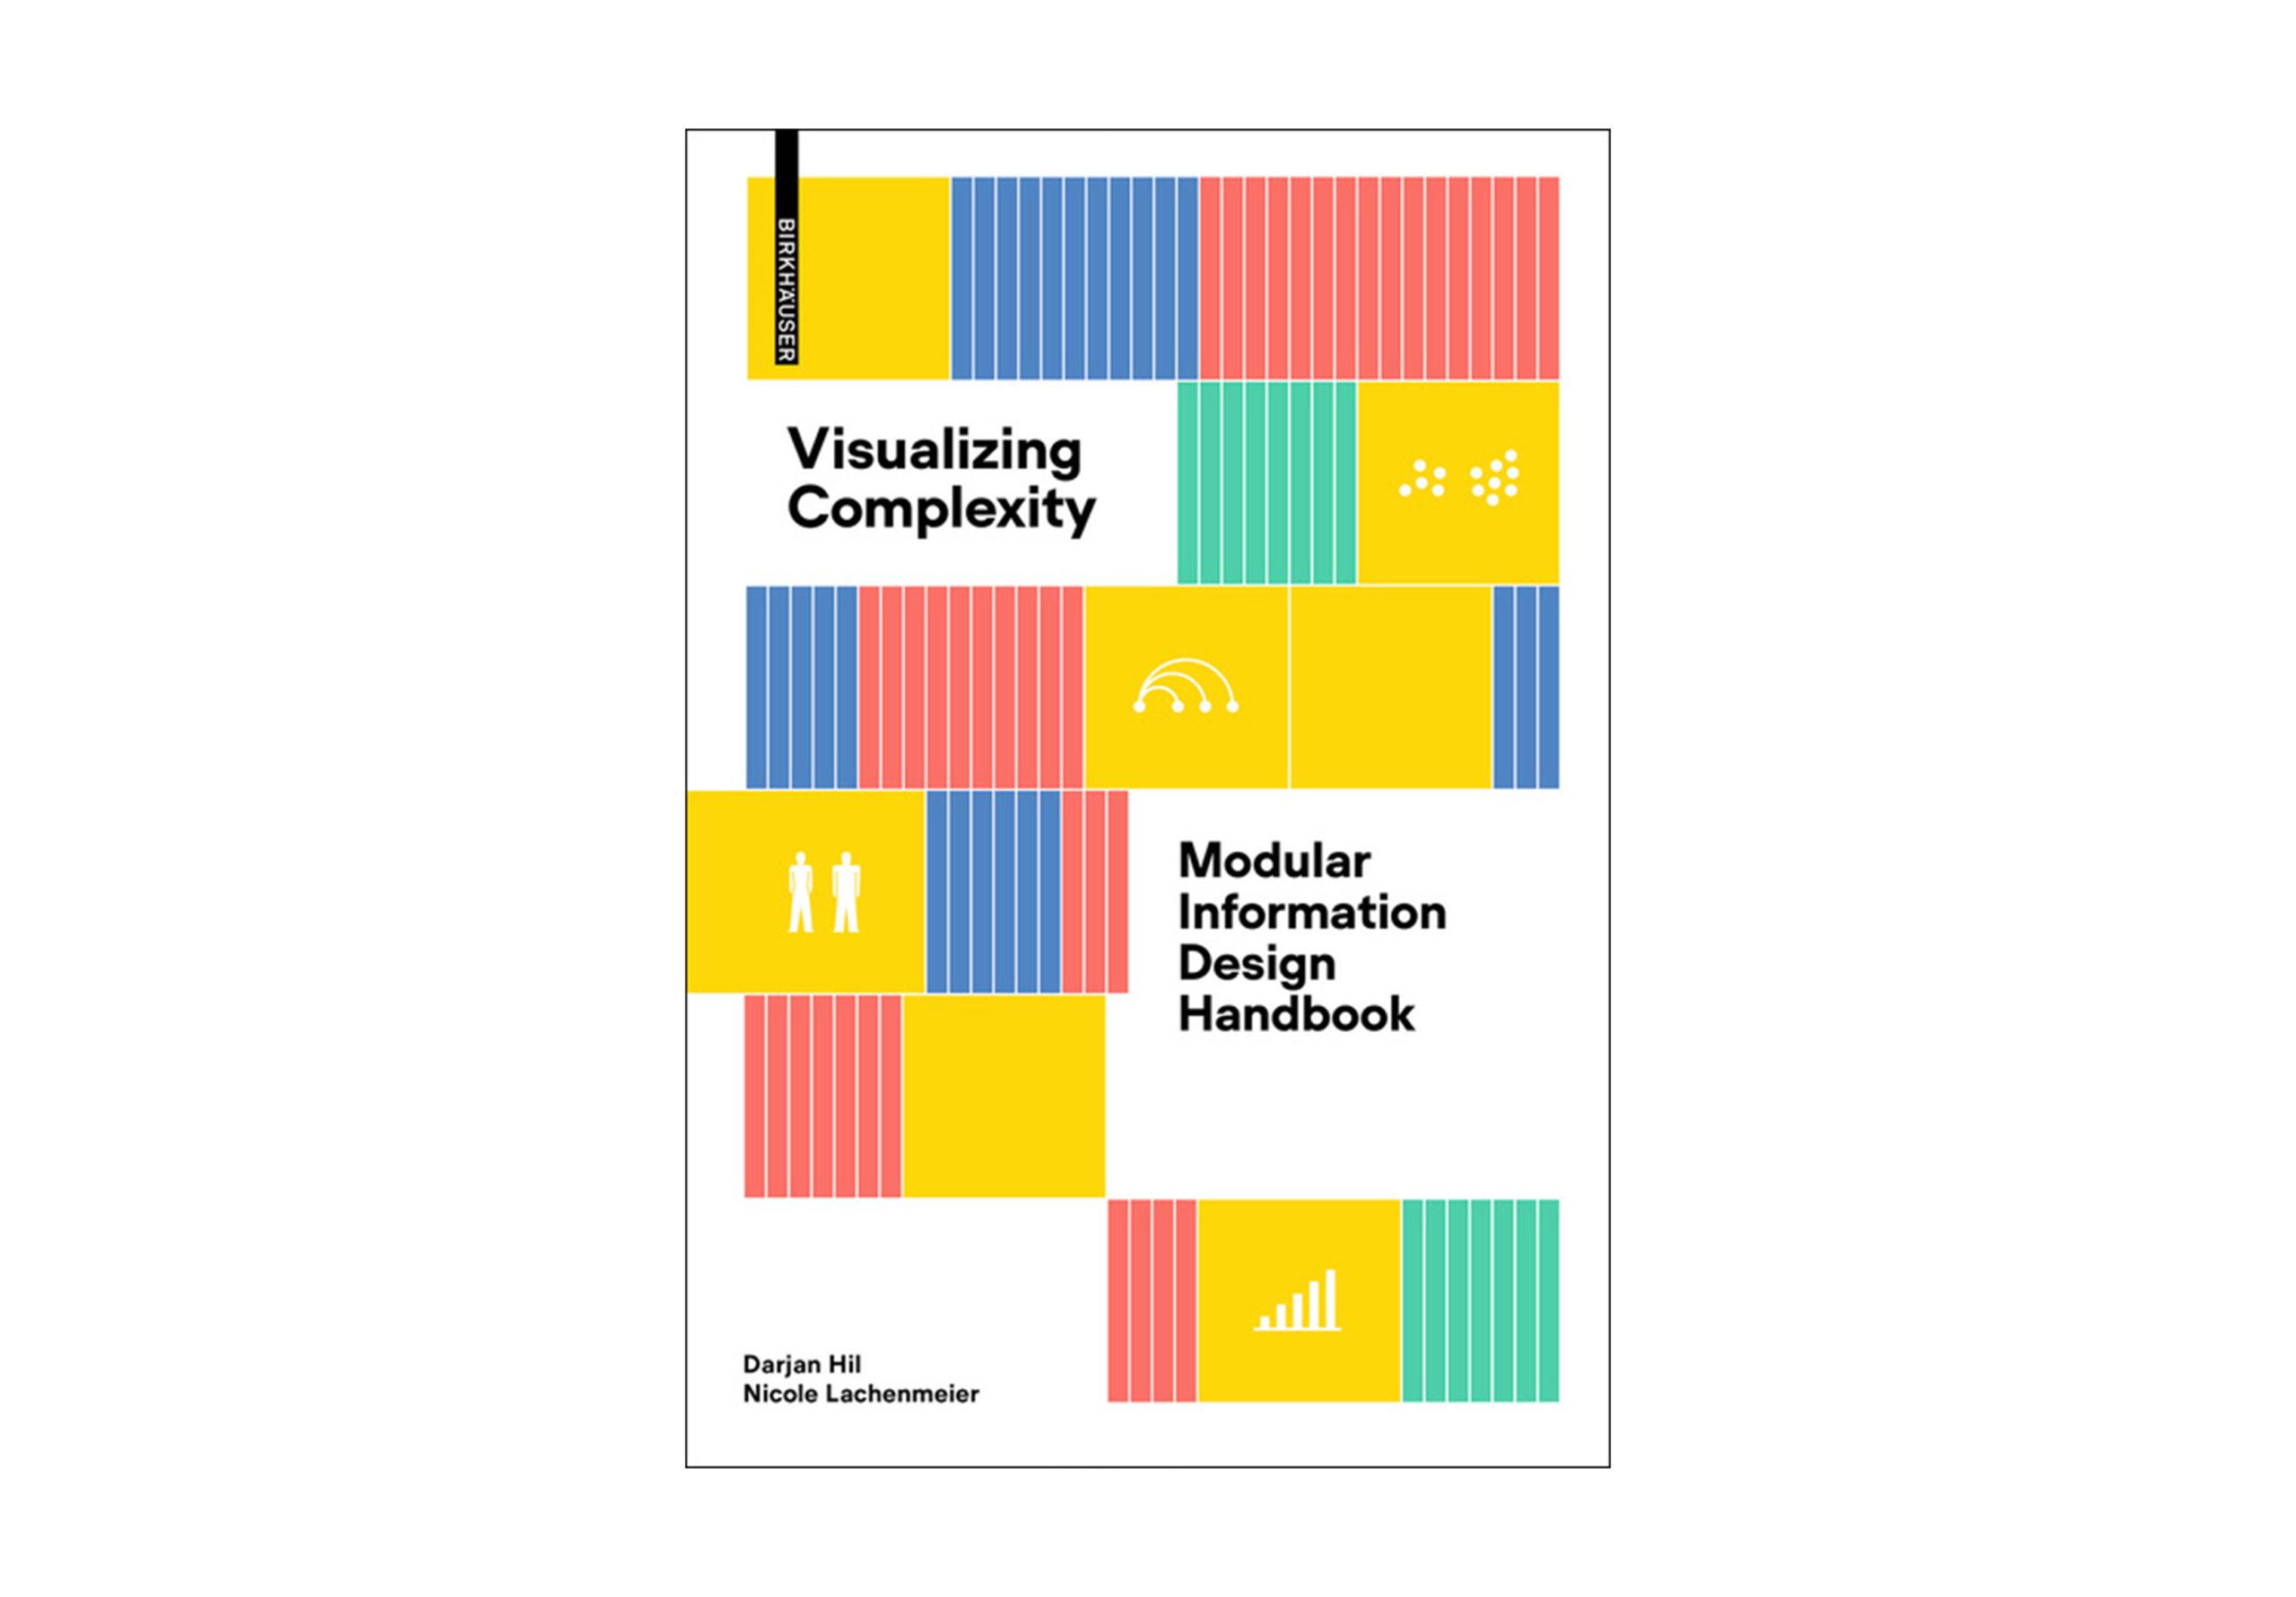 Auszeichnung für Visualizing Complexity